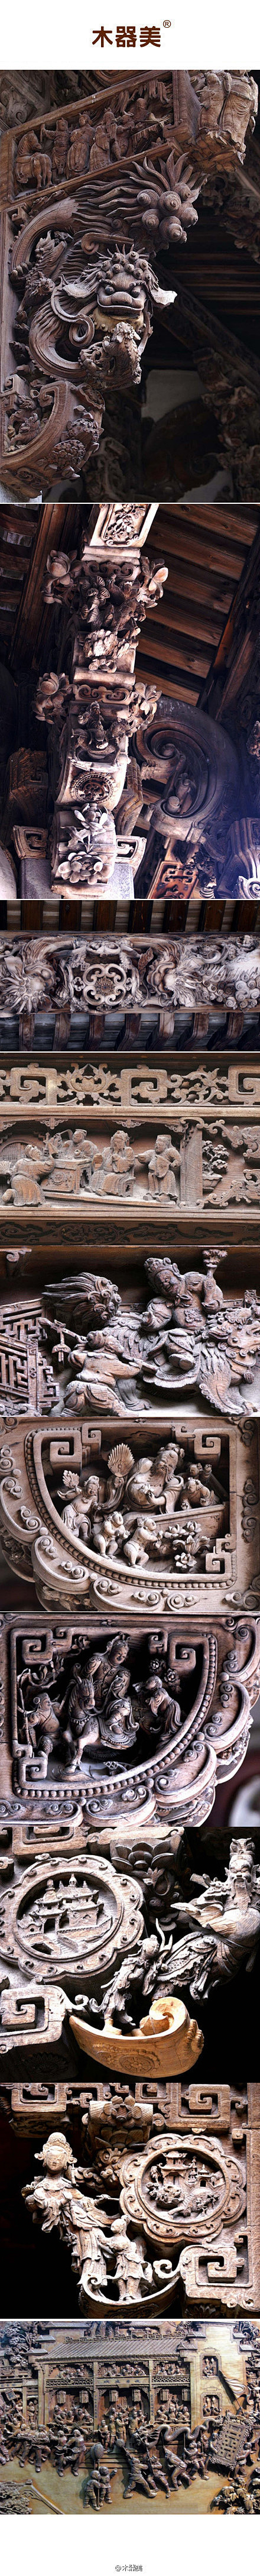 
中式木雕



